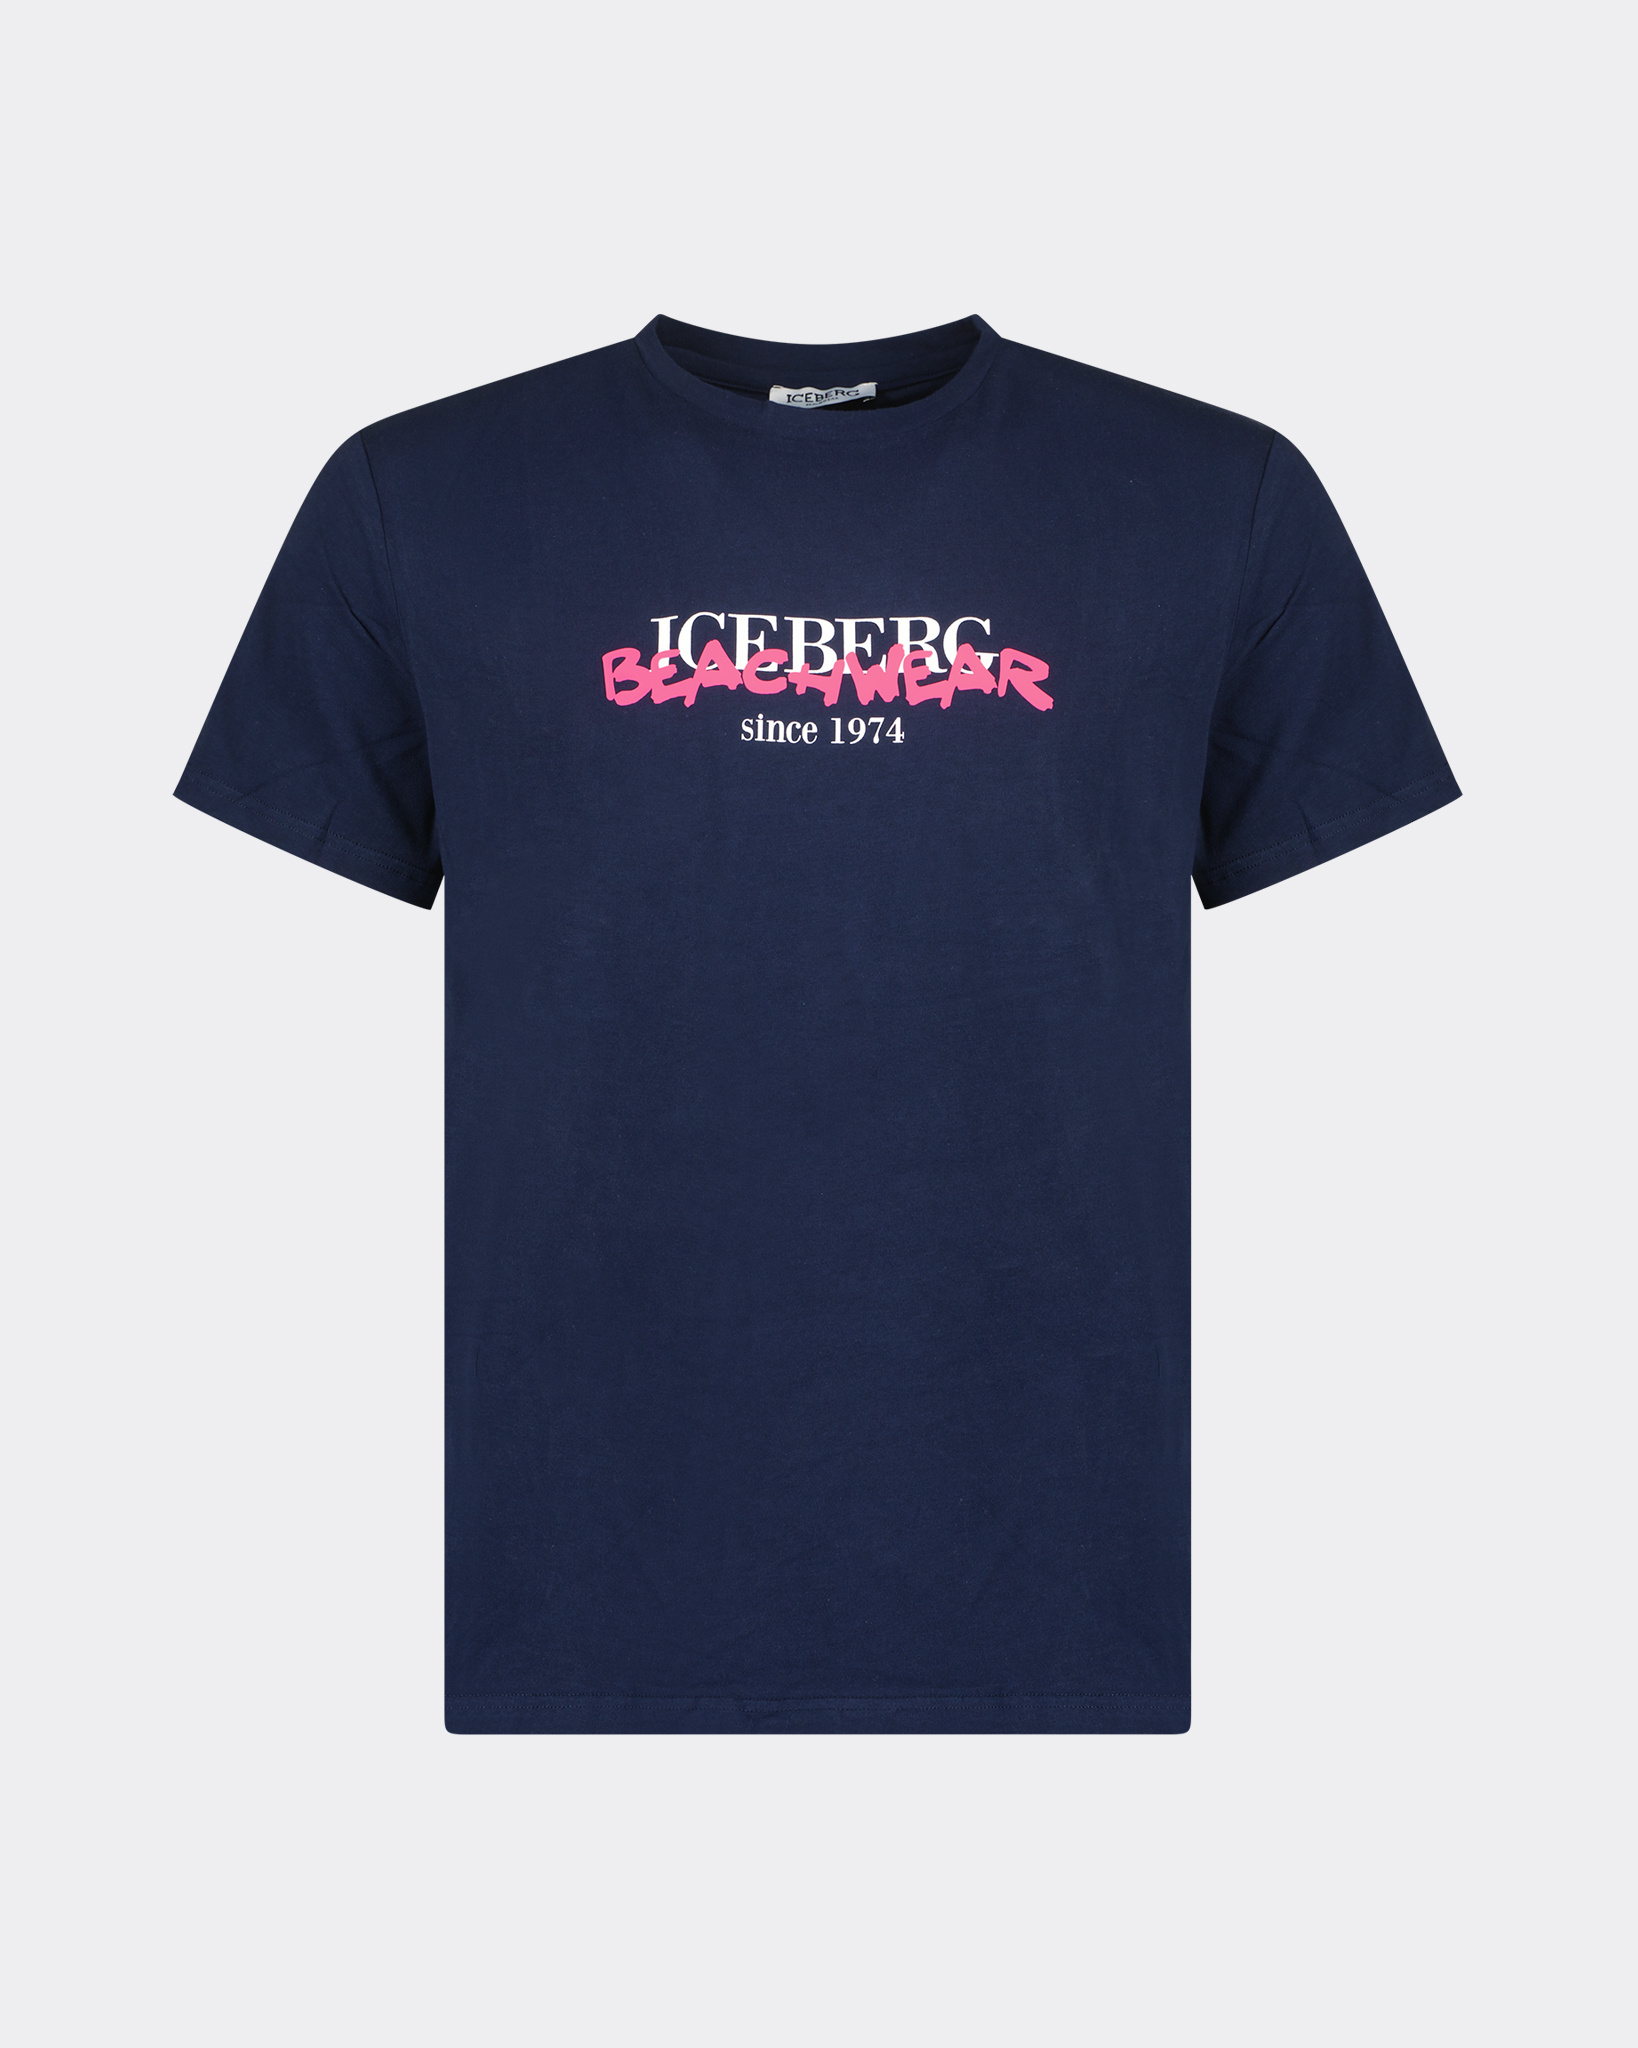 ras Stad bloem agentschap Iceberg Beachwear Neon T-shirt Marine - Beachim